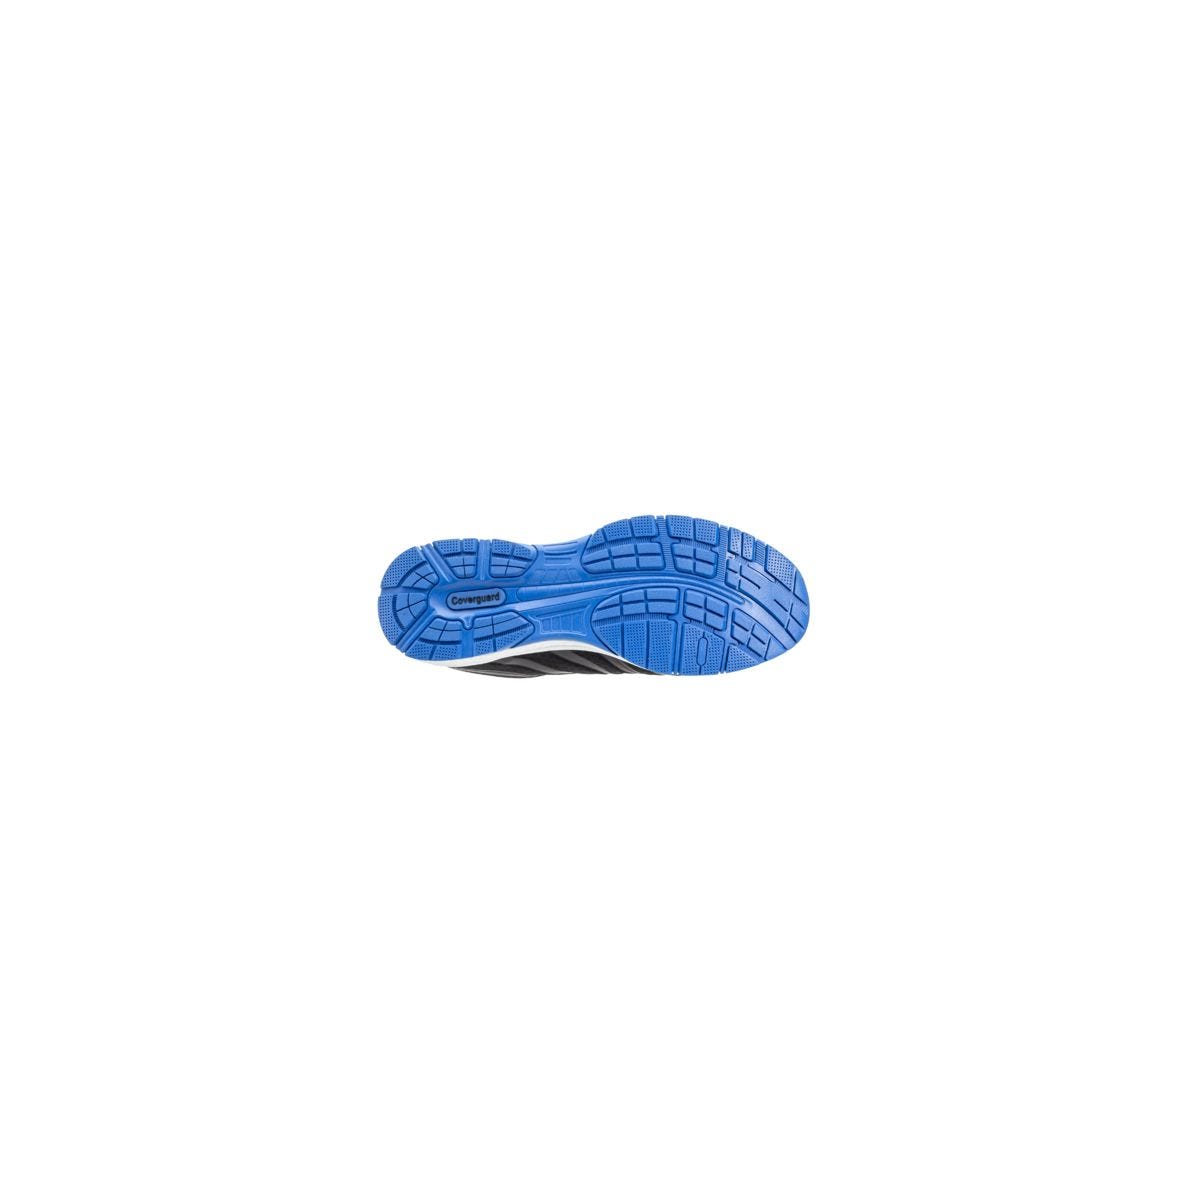 Chaussures de sécurité S1P GALAXITE Basse Maille Noir Bleu ESD - COVERGUARD - Taille 39 1